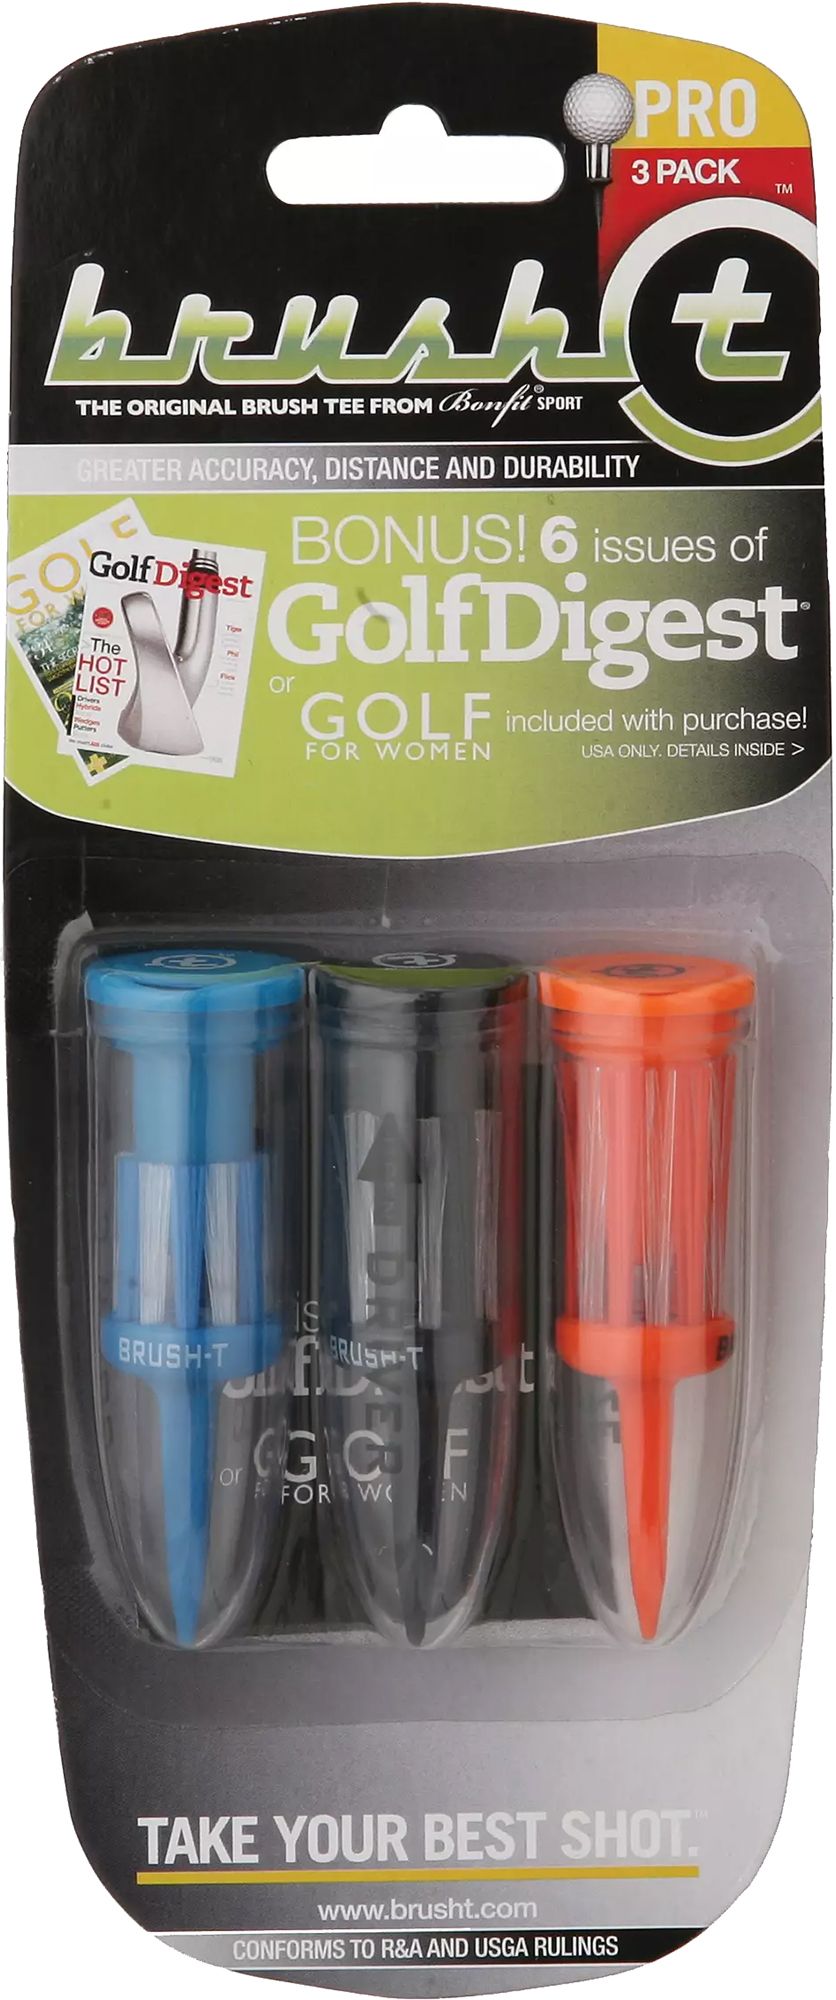 Brush-t Multi Golf Tees - 3 Pack